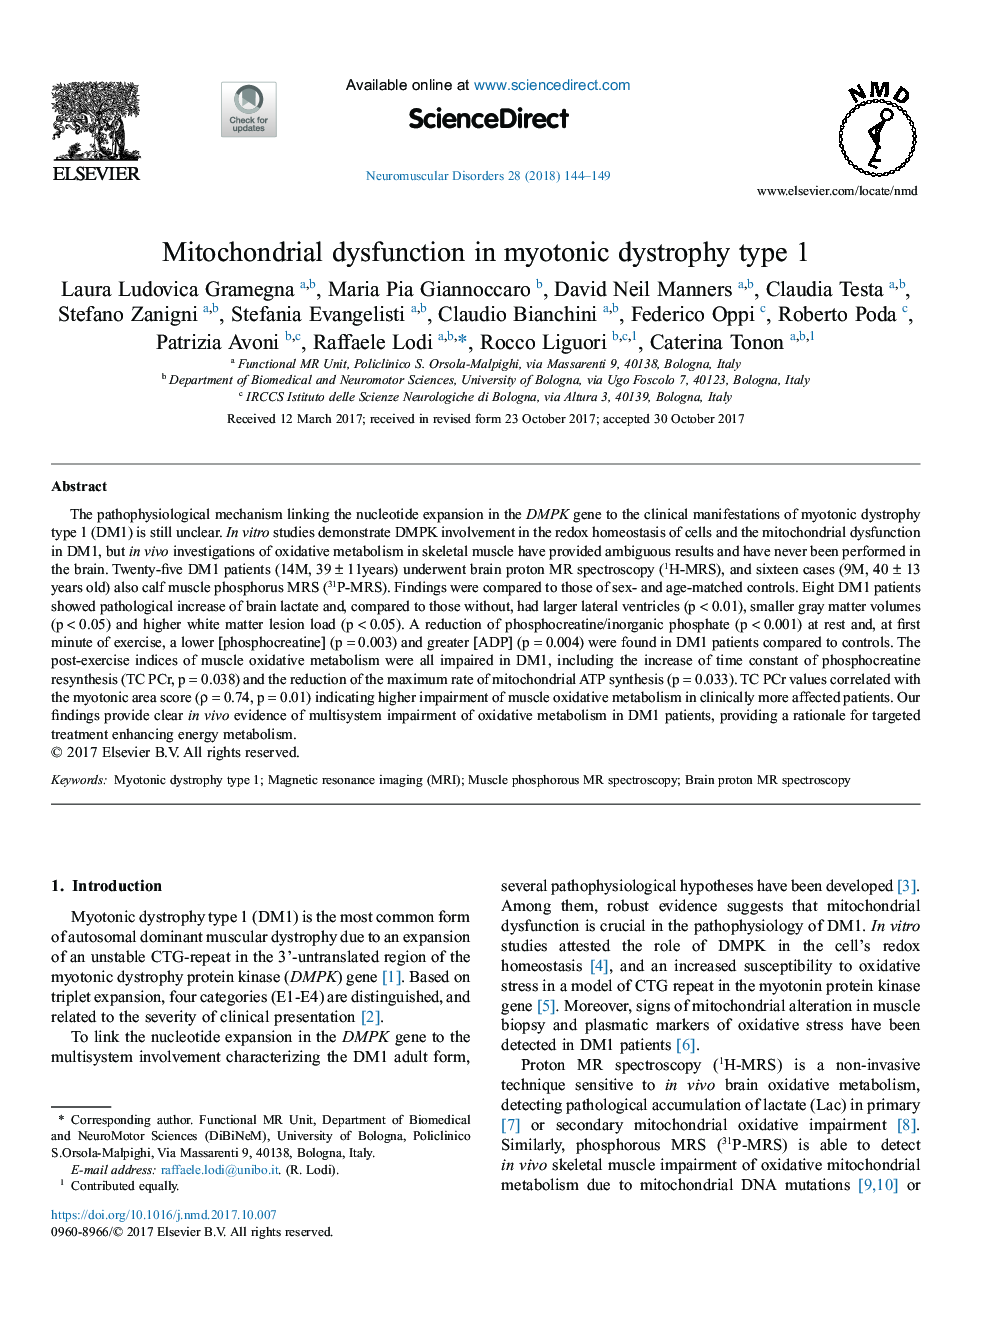 اختلال عملکرد میتوکندری در نوع دیستروفی میوتونی 1 